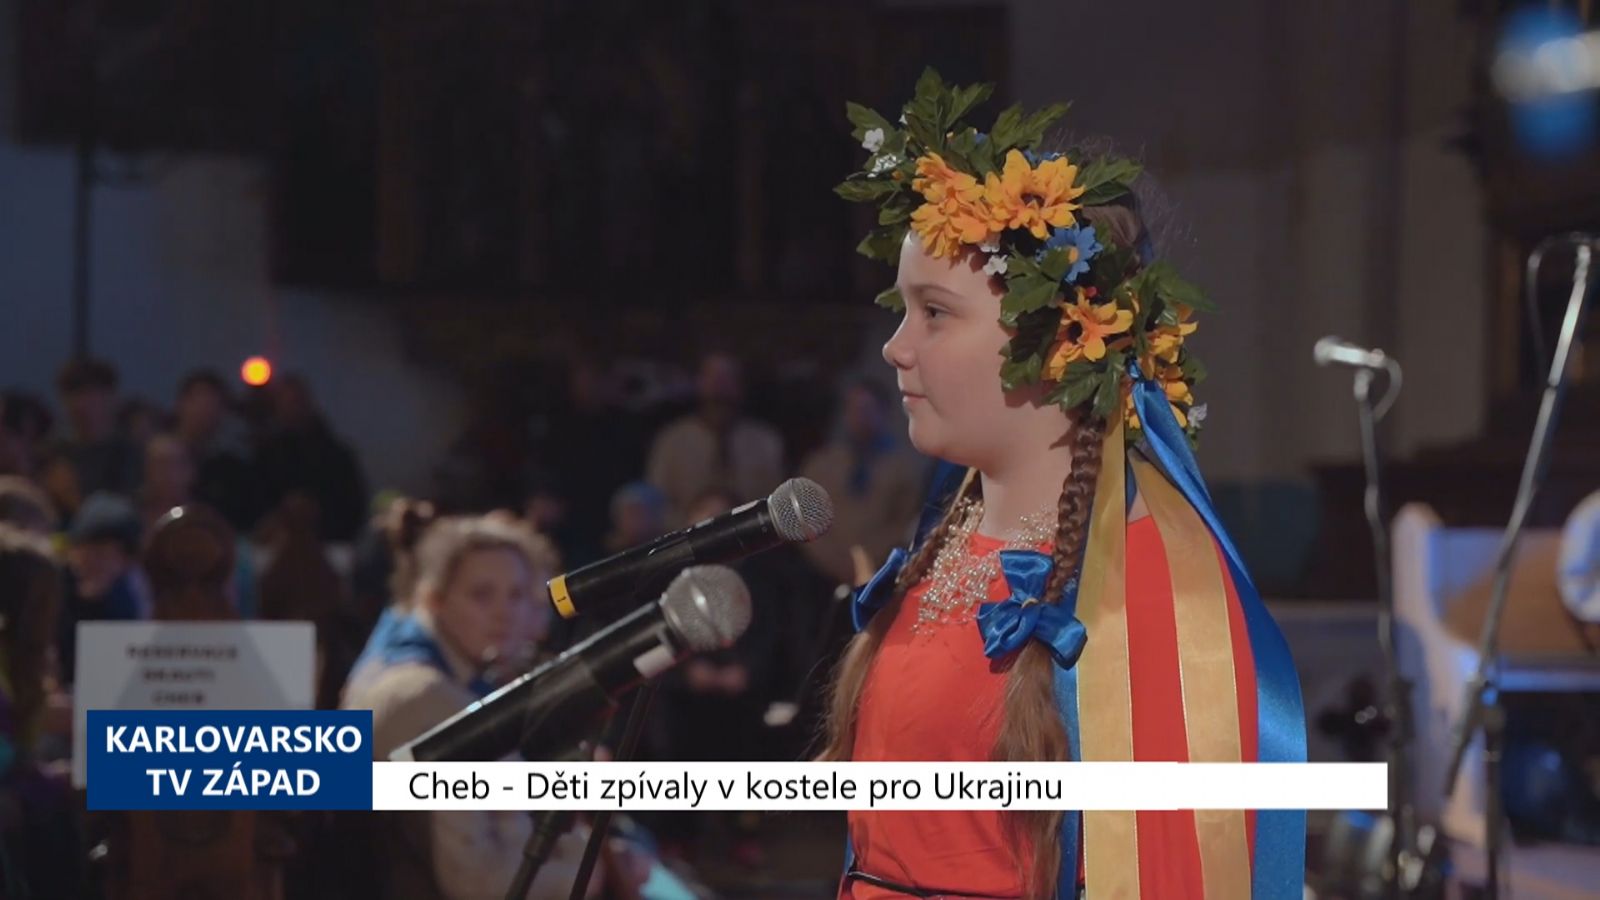 Cheb: Děti zpívaly v kostele pro Ukrajinu (TV Západ)